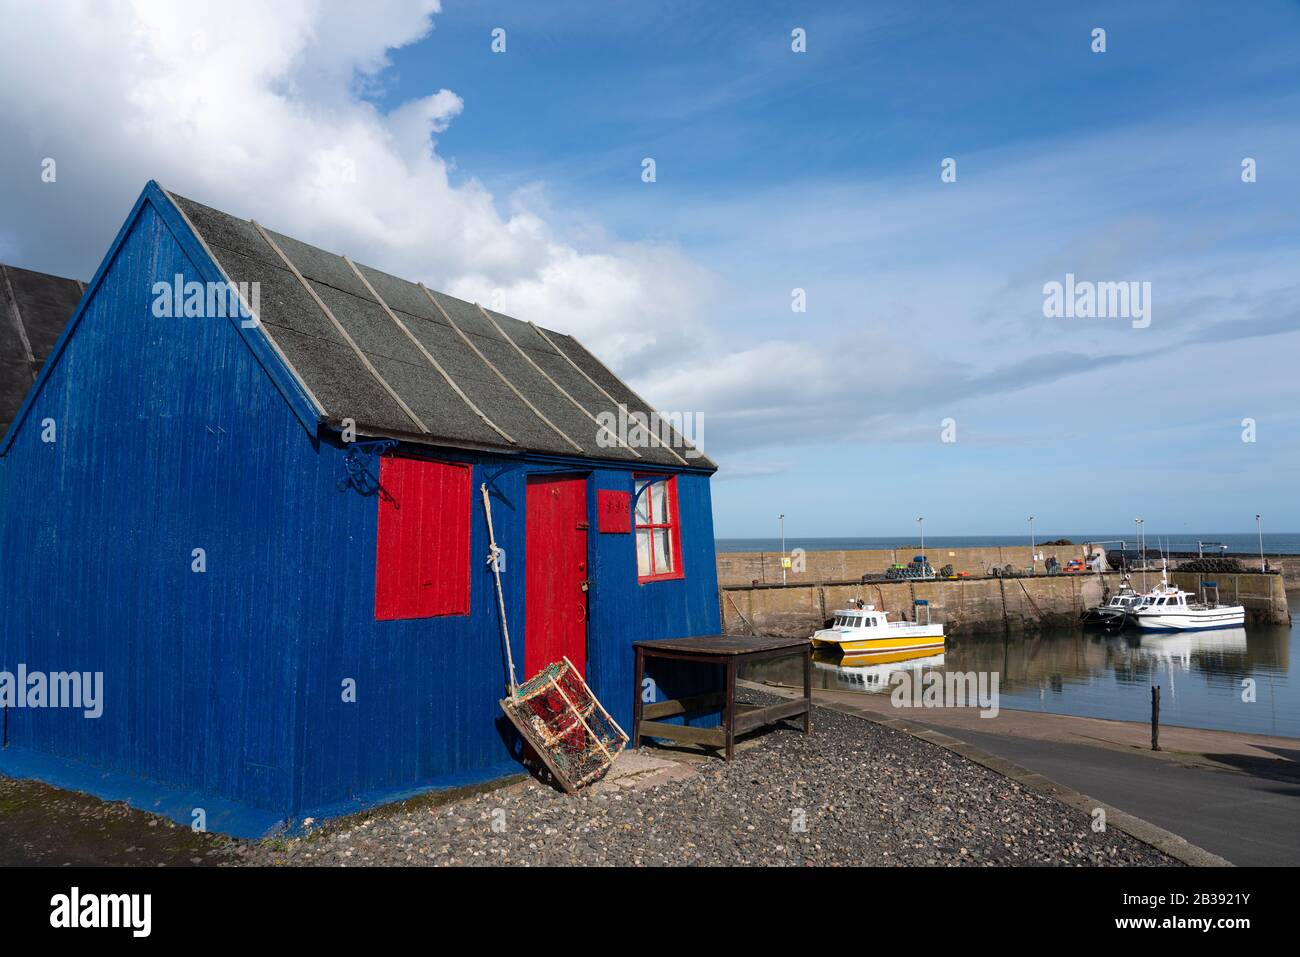 Cabane en bois colorée près du port dans le village de pêcheurs de St Abbs sur la côte de la mer du Nord à Scottish Borders, Écosse, Royaume-Uni Banque D'Images